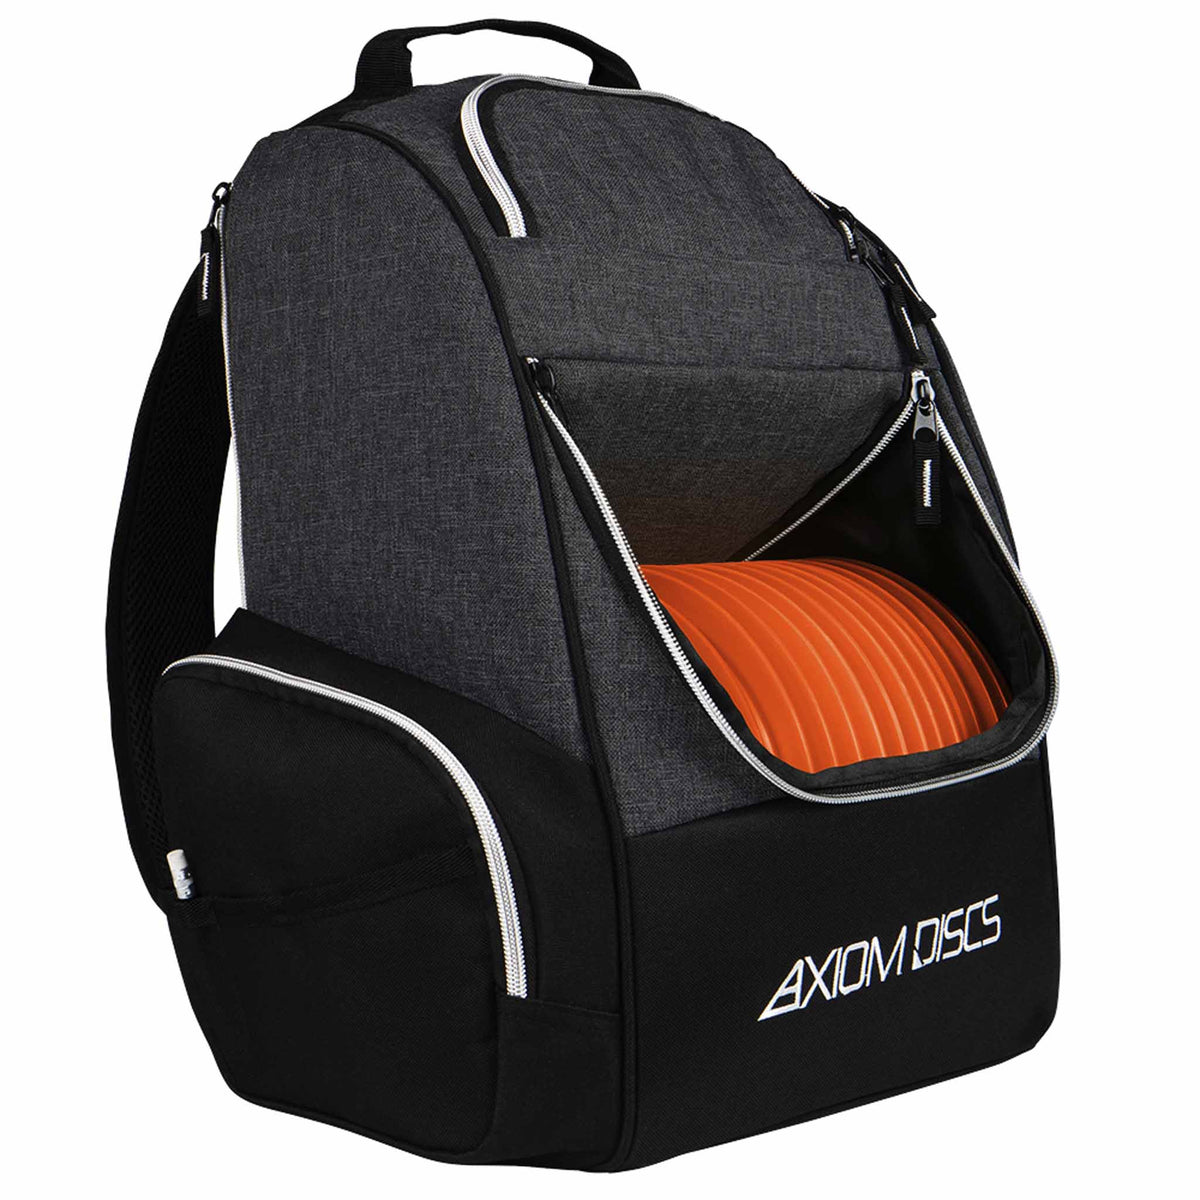 Axiom Shuttle Disc Golf Bag - Black